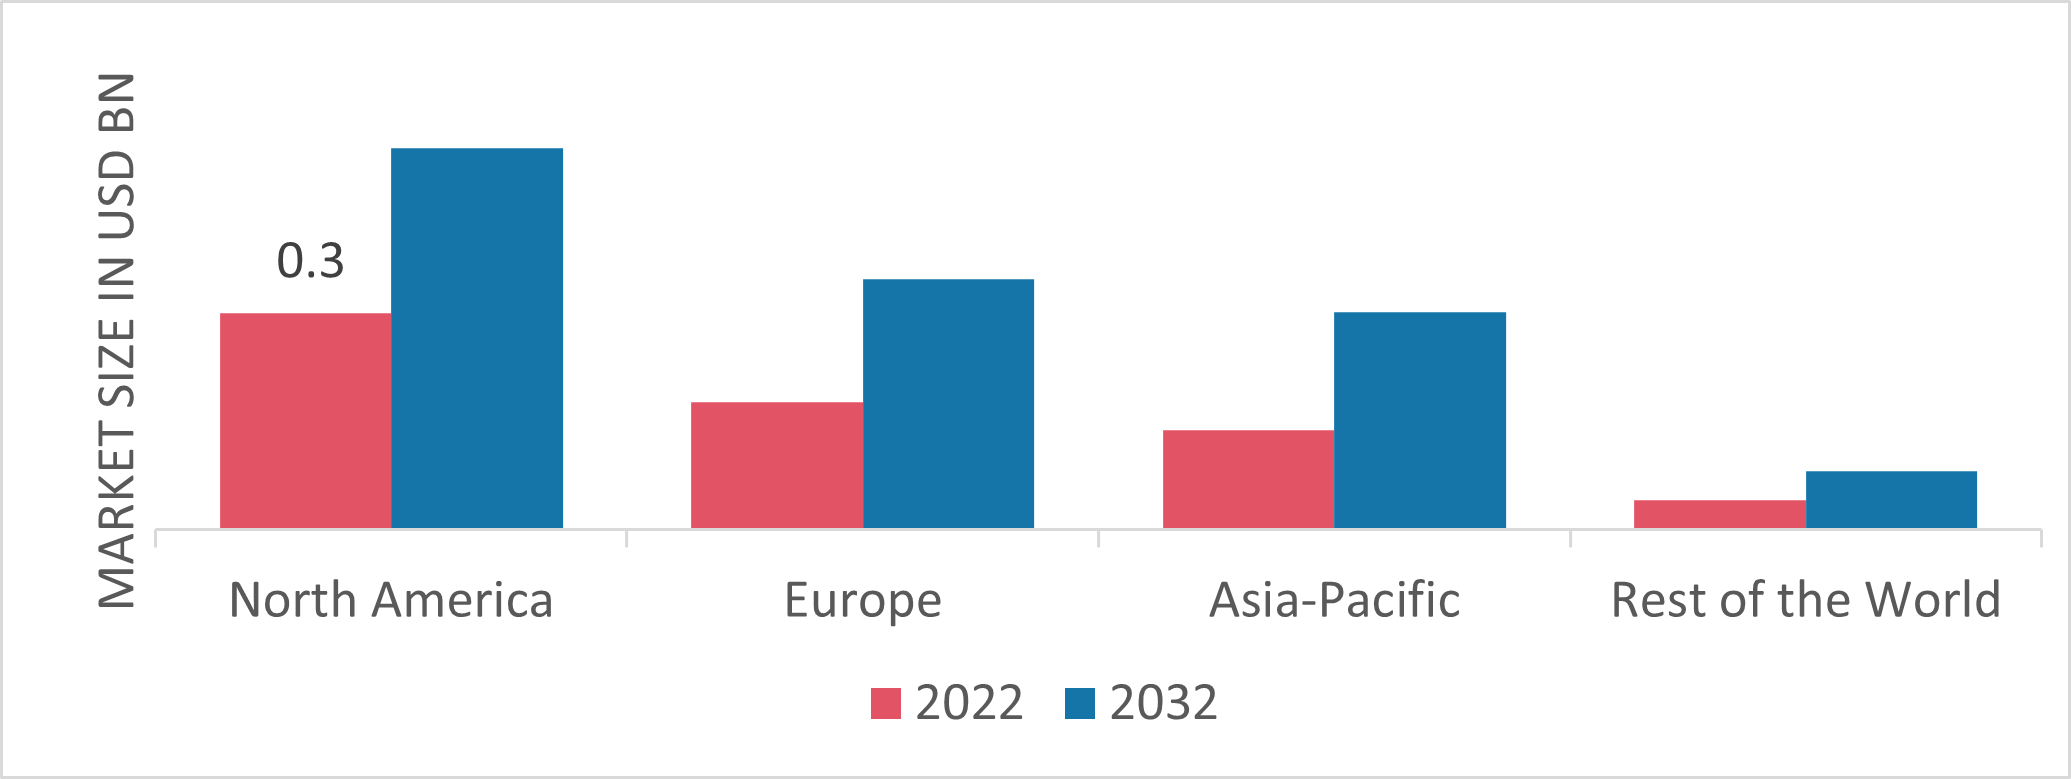 Intelligent Pumps Market Share by Region 2022